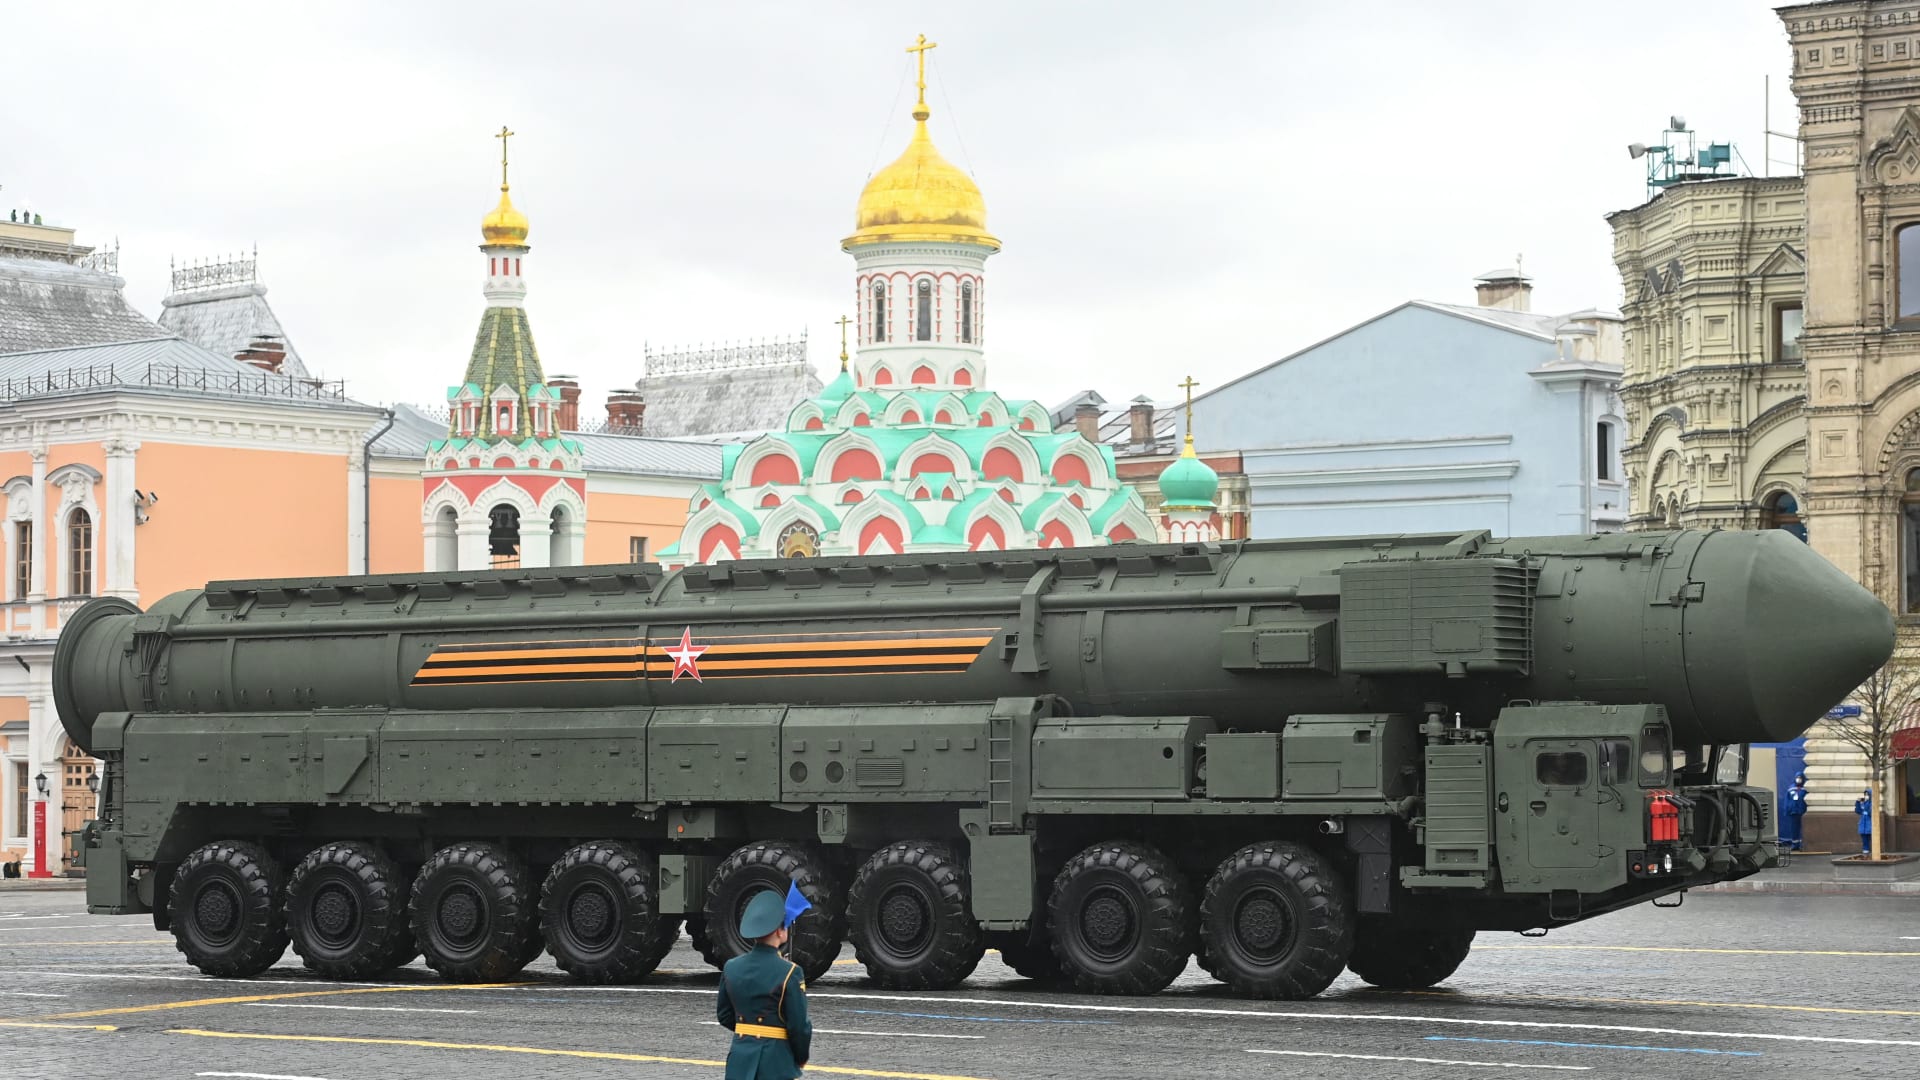 ما الرسالة التي يبعث بها بوتين بإطلاق روسيا صواريخ فرط صوتية على هدف وهمي في بحر اليابان؟